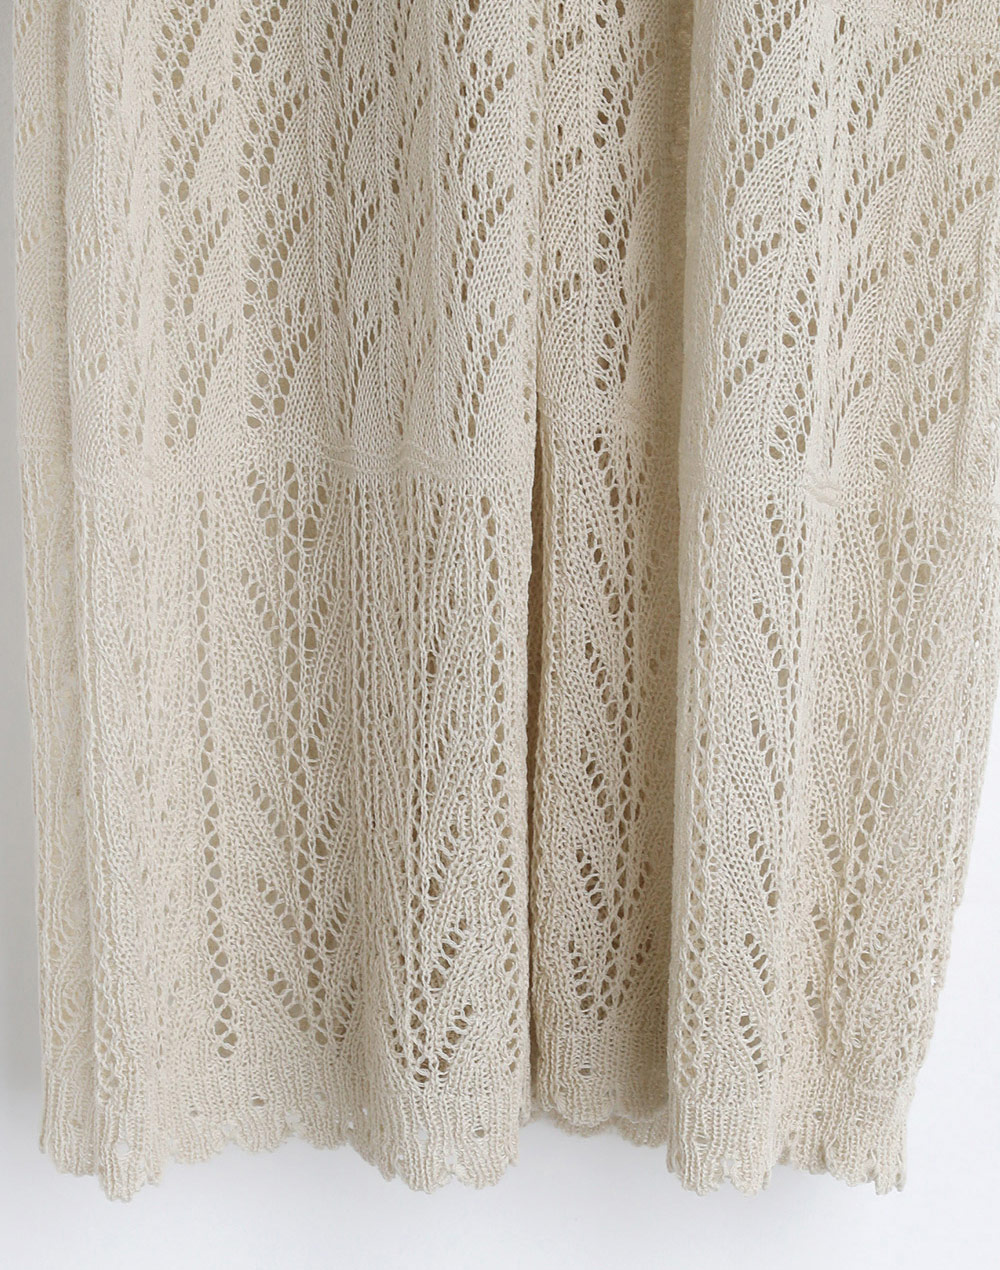 lace knit pants・t281797（パンツ/パンツ）| rirry_71 | 東京ガールズマーケット